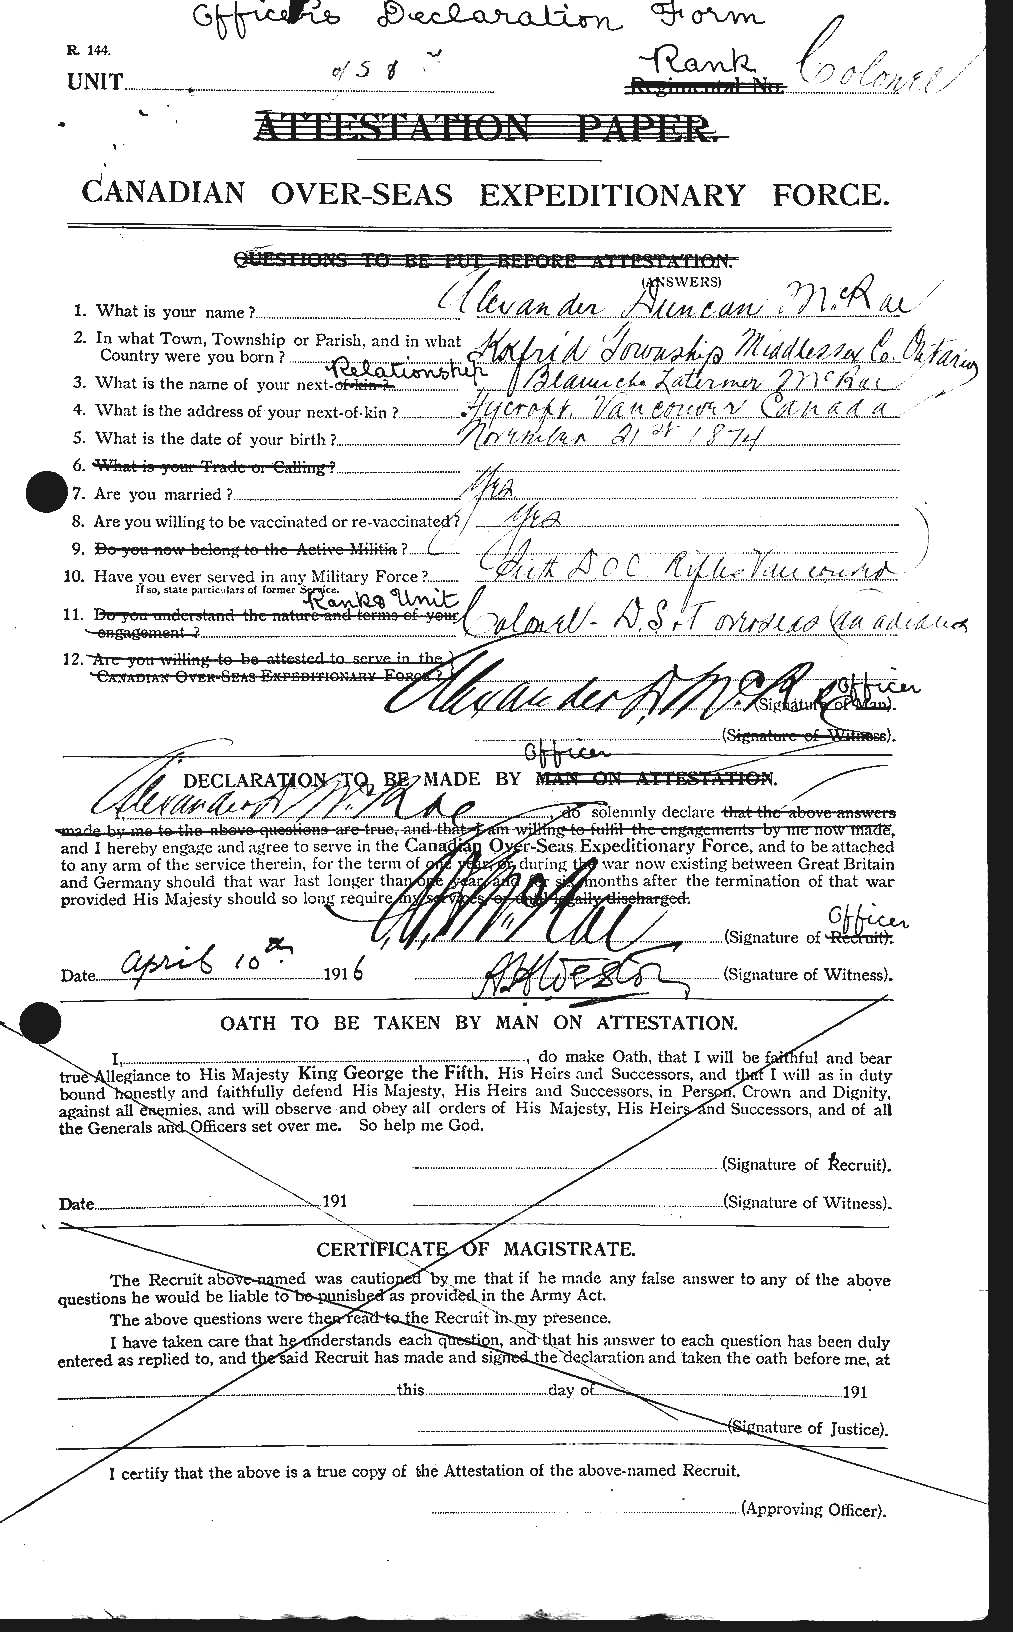 Dossiers du Personnel de la Première Guerre mondiale - CEC 546105a